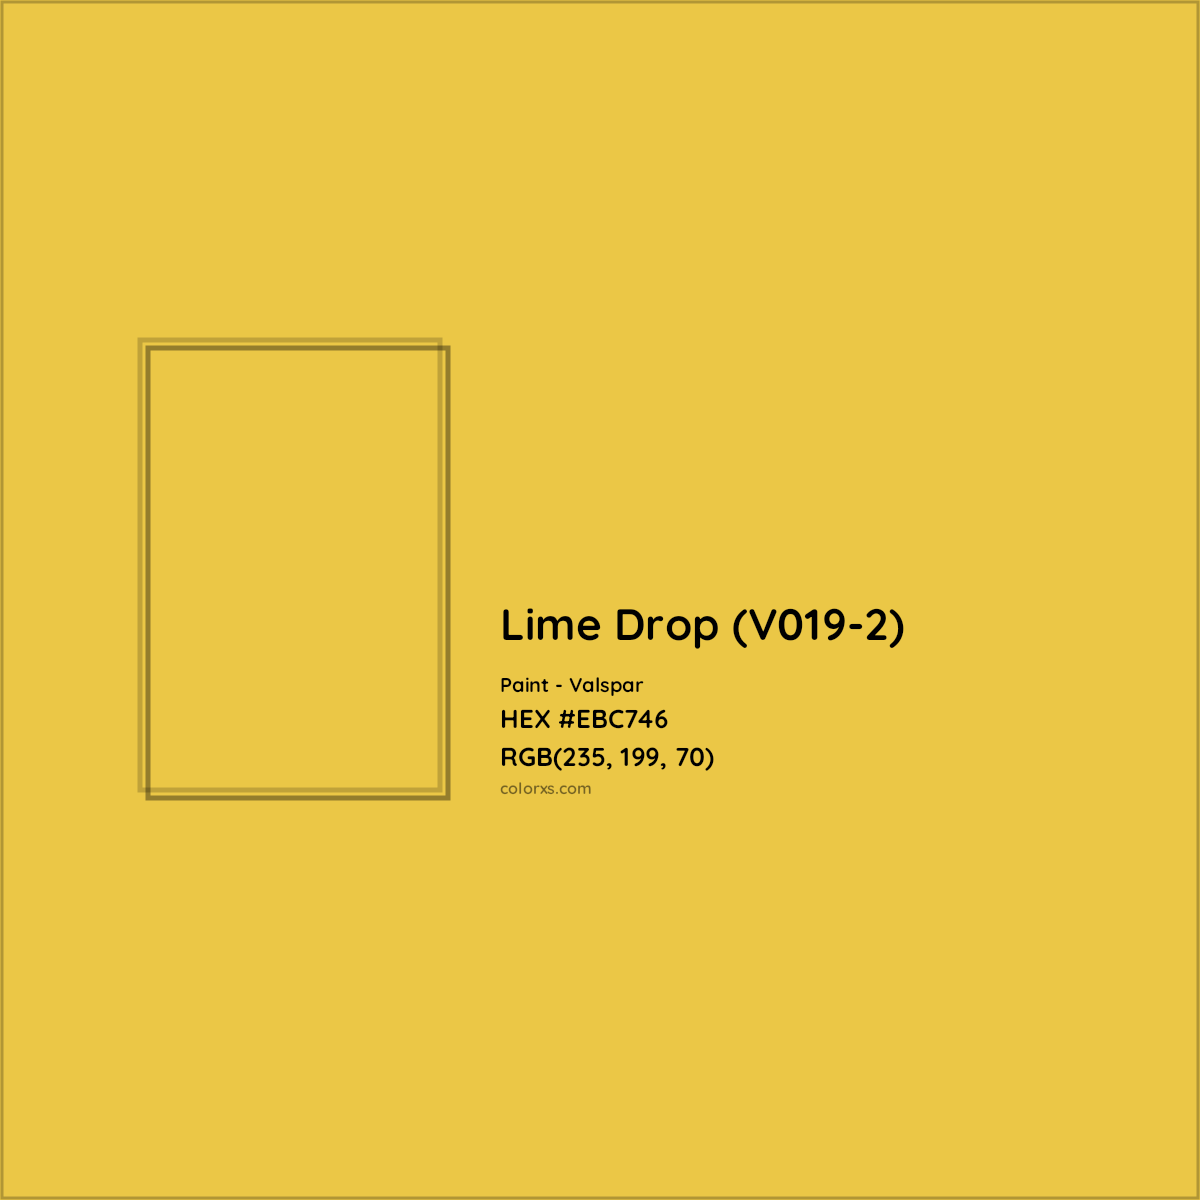 HEX #EBC746 Lime Drop (V019-2) Paint Valspar - Color Code